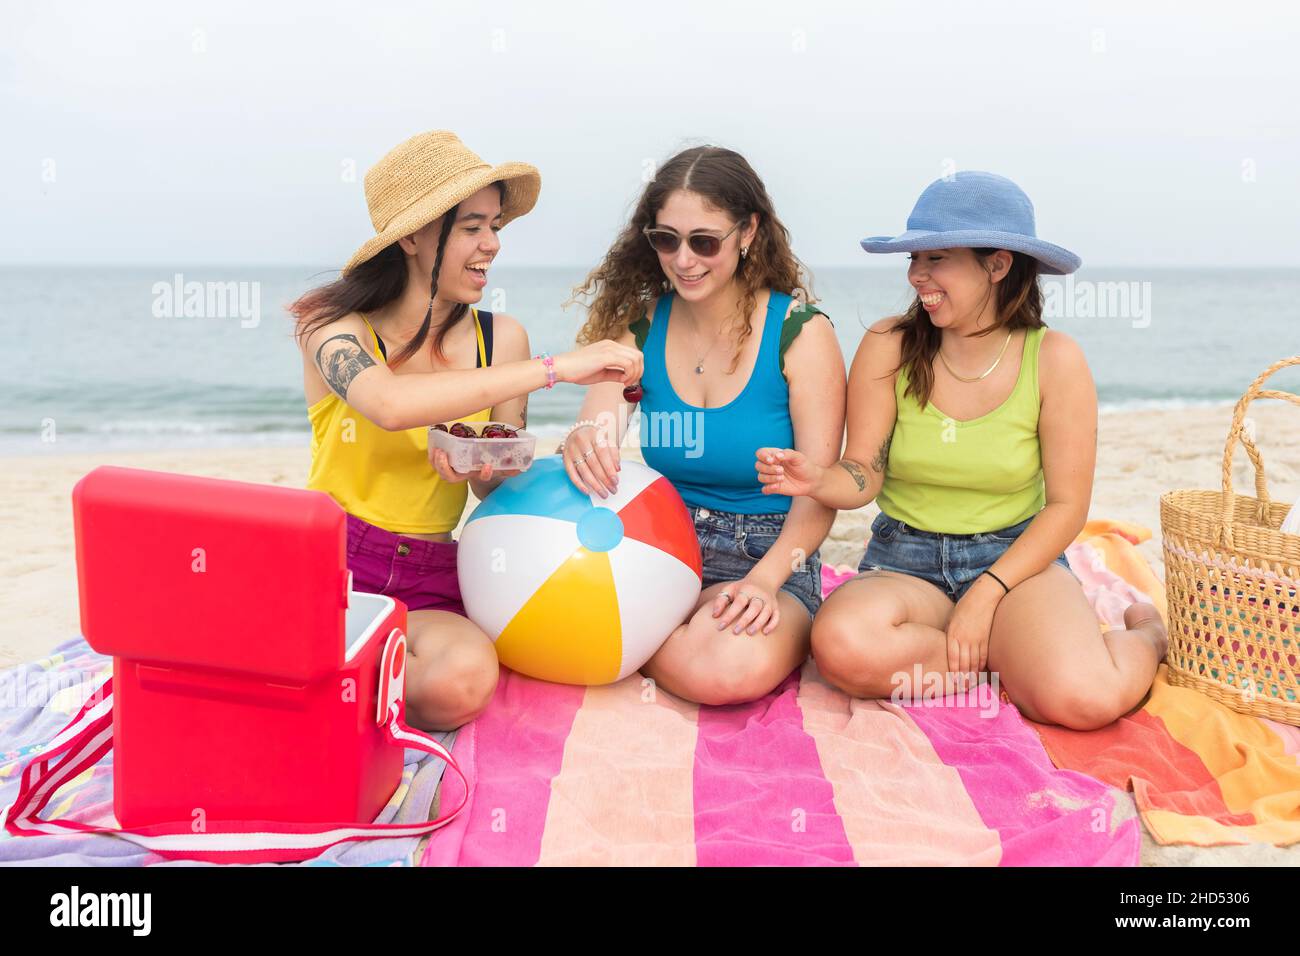 Trois amies d'âge universitaire mangent des cerises à la plage Banque D'Images